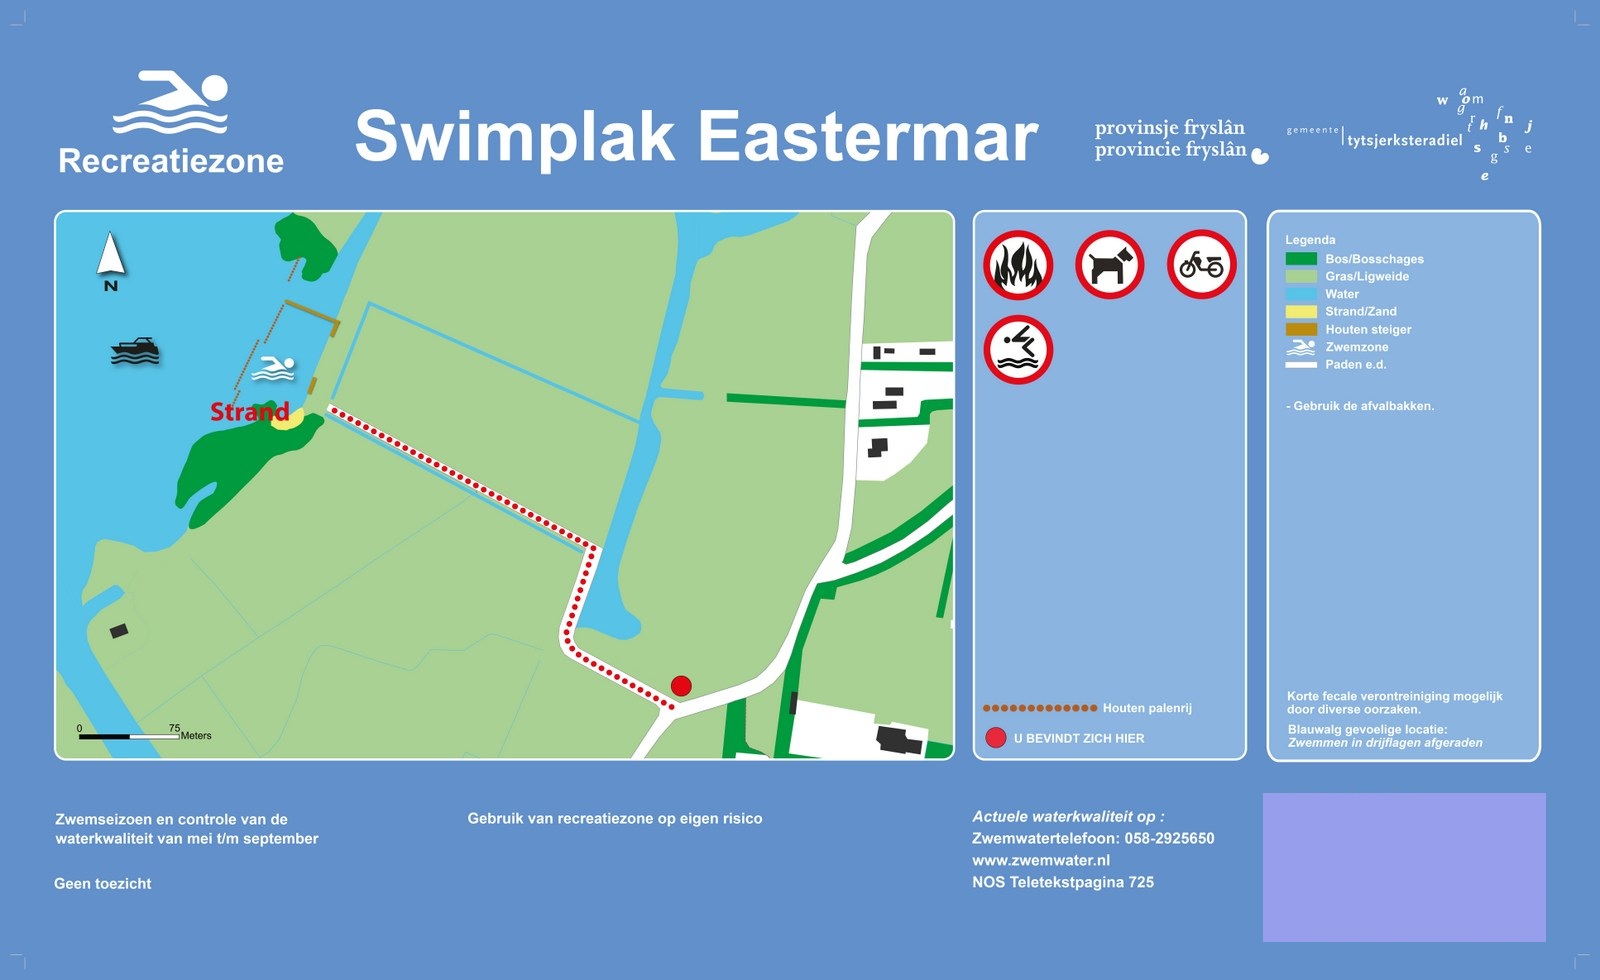 Het informatiebord bij zwemlocatie Swimplak Eastermar